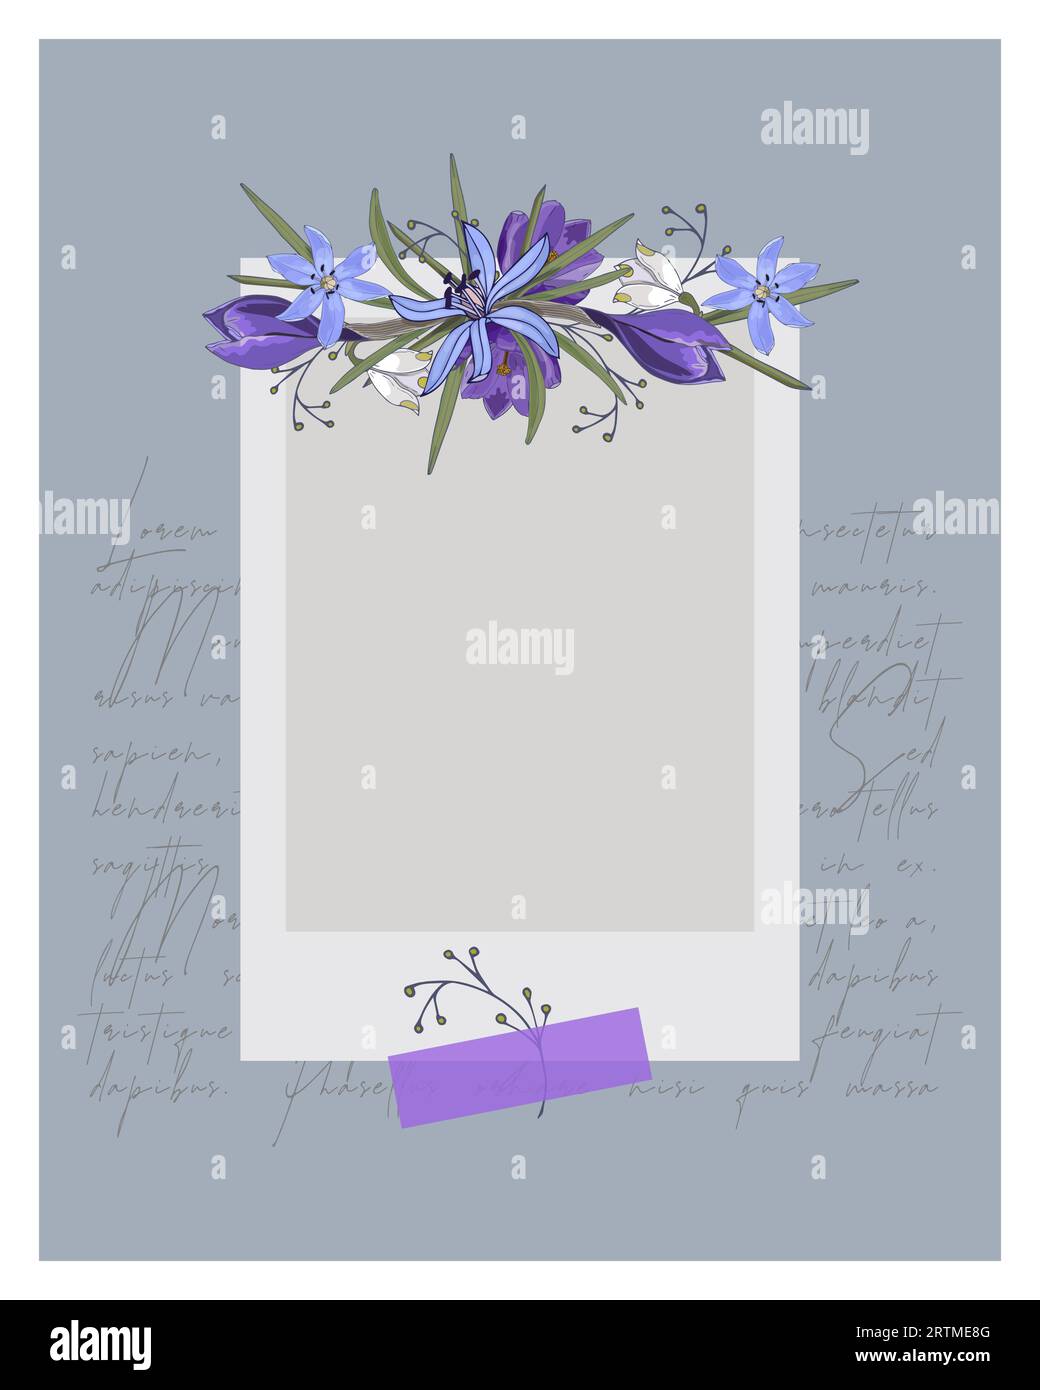 Cadre photo vintage collage avec des fleurs d'ornement doodle et texte Lorem ipsum. Livre photo. Illustration vectorielle. Illustration de Vecteur